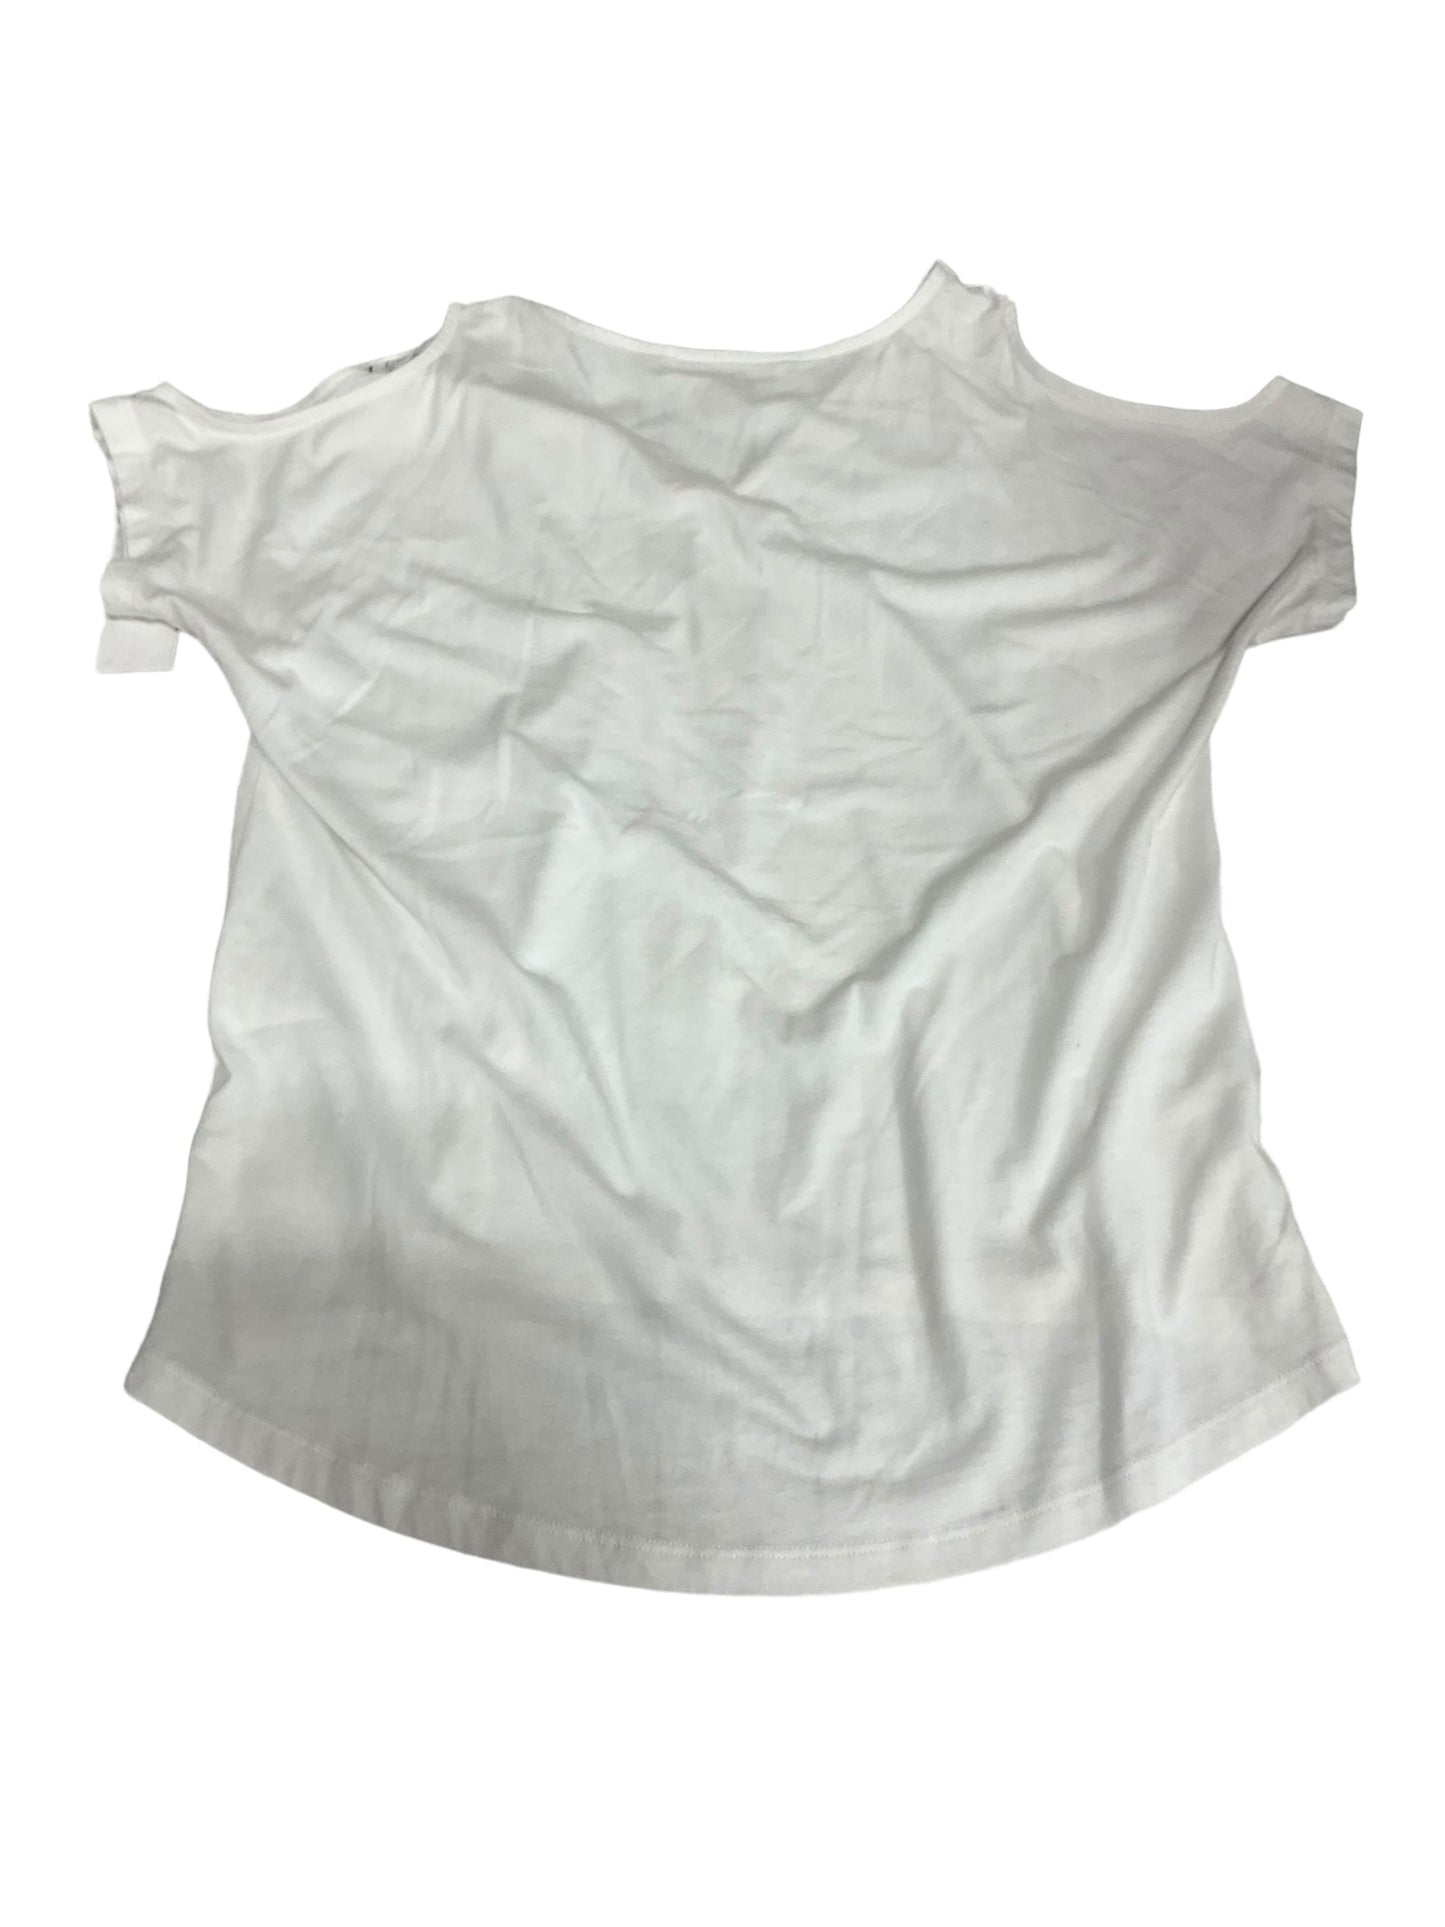 White Top Short Sleeve Designer Michael Kors, Size S